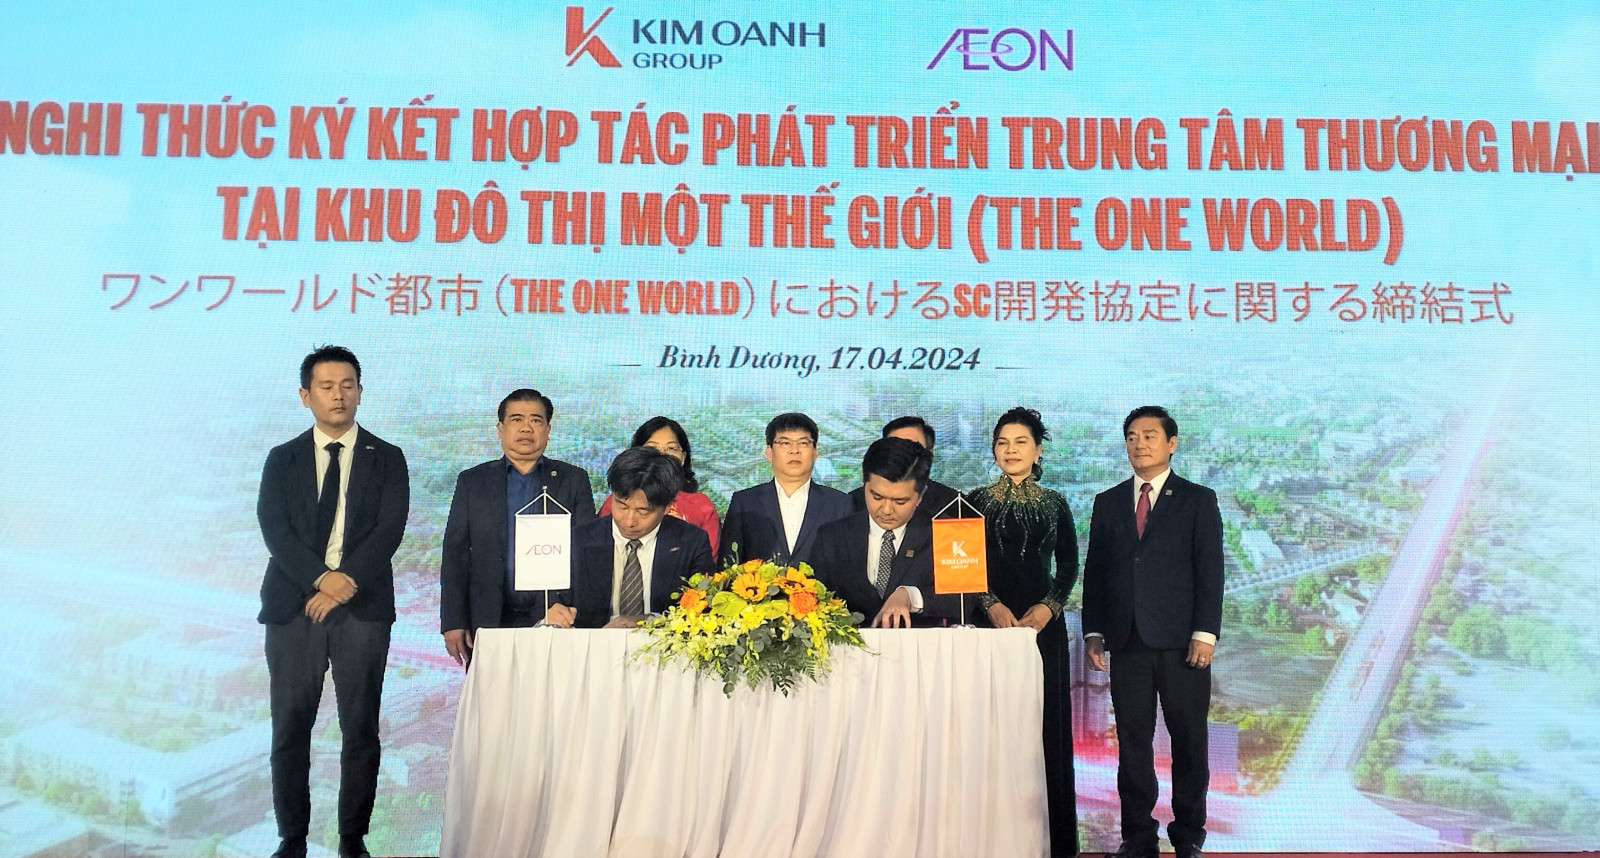 AEON Việt Nam xây siêu thị TTTM Aeon Mall tại dự án khu đô thị Một Thế Giới - The One World Bình Dương của tập đoàn Kim Oanh Group